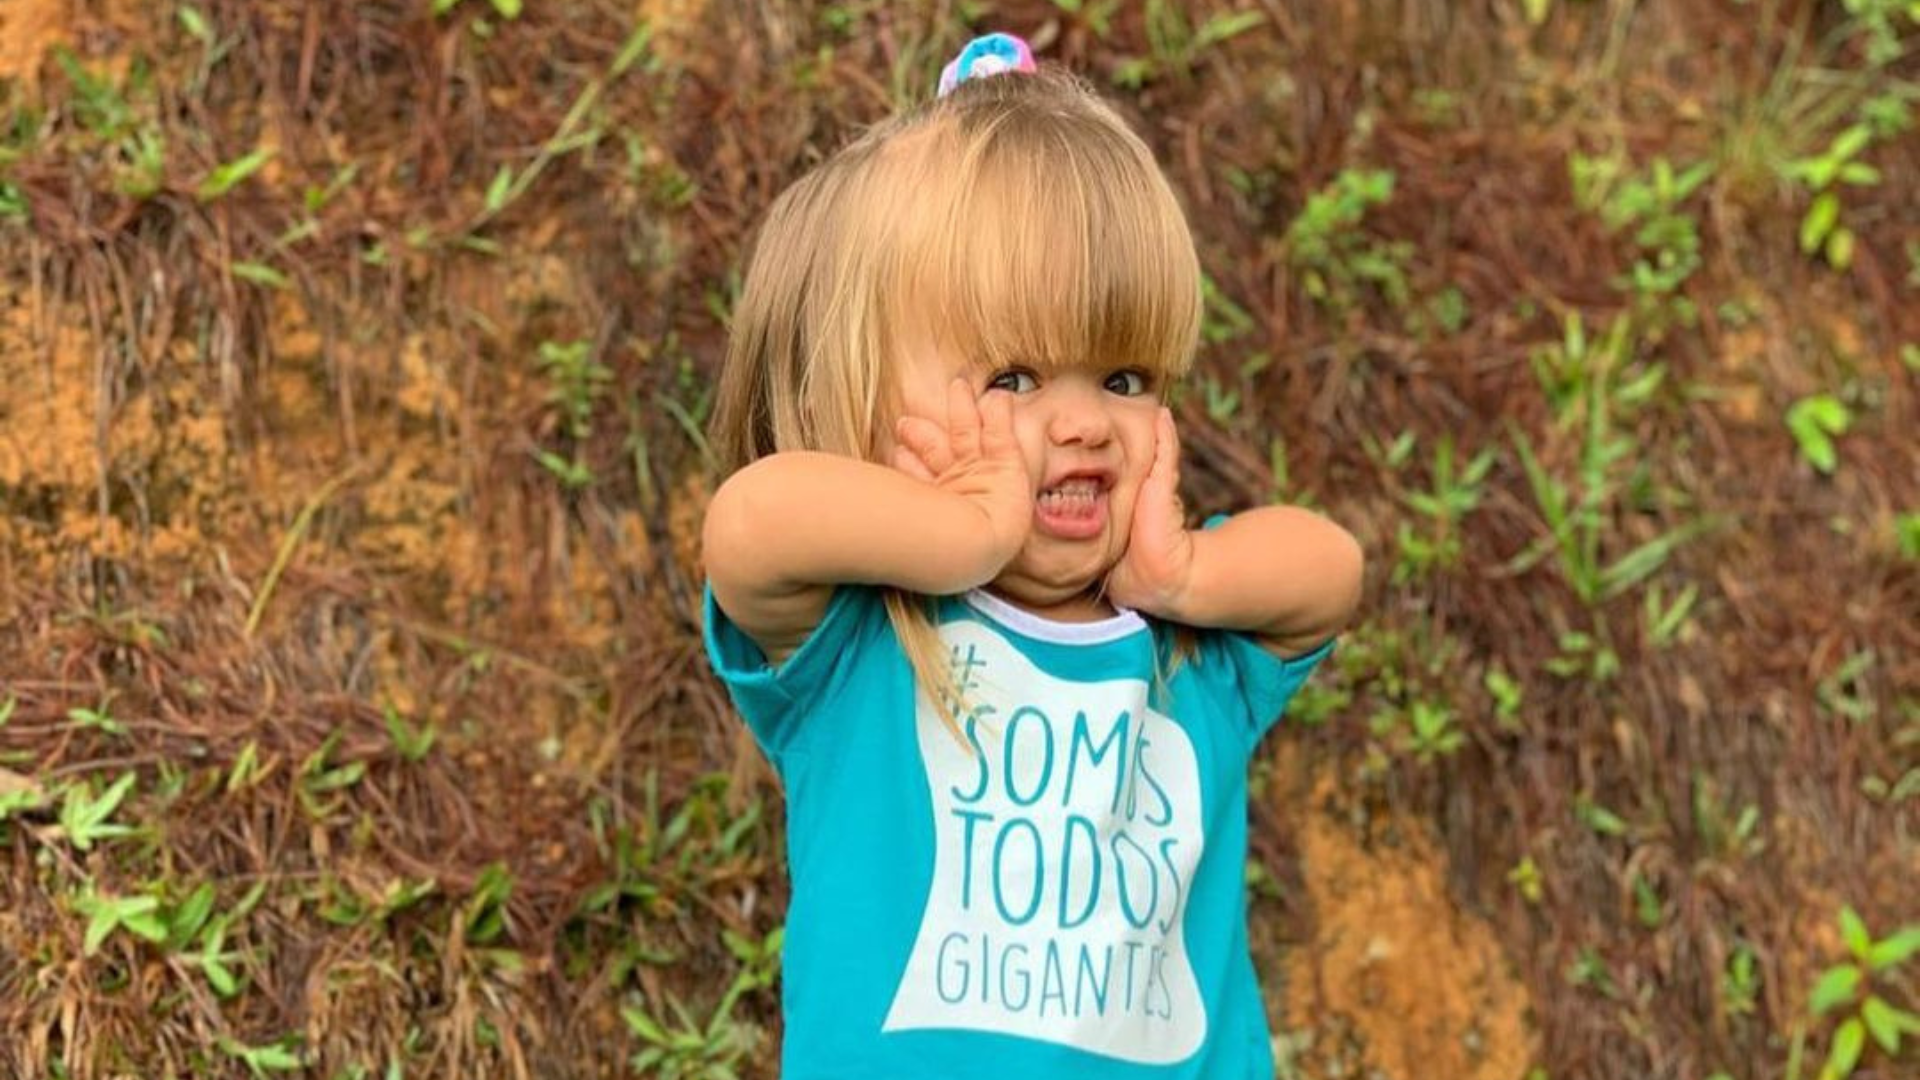 Liz Faleiro Valadares, de 4 anos, foi diagnosticada com nanismo aos 4 meses